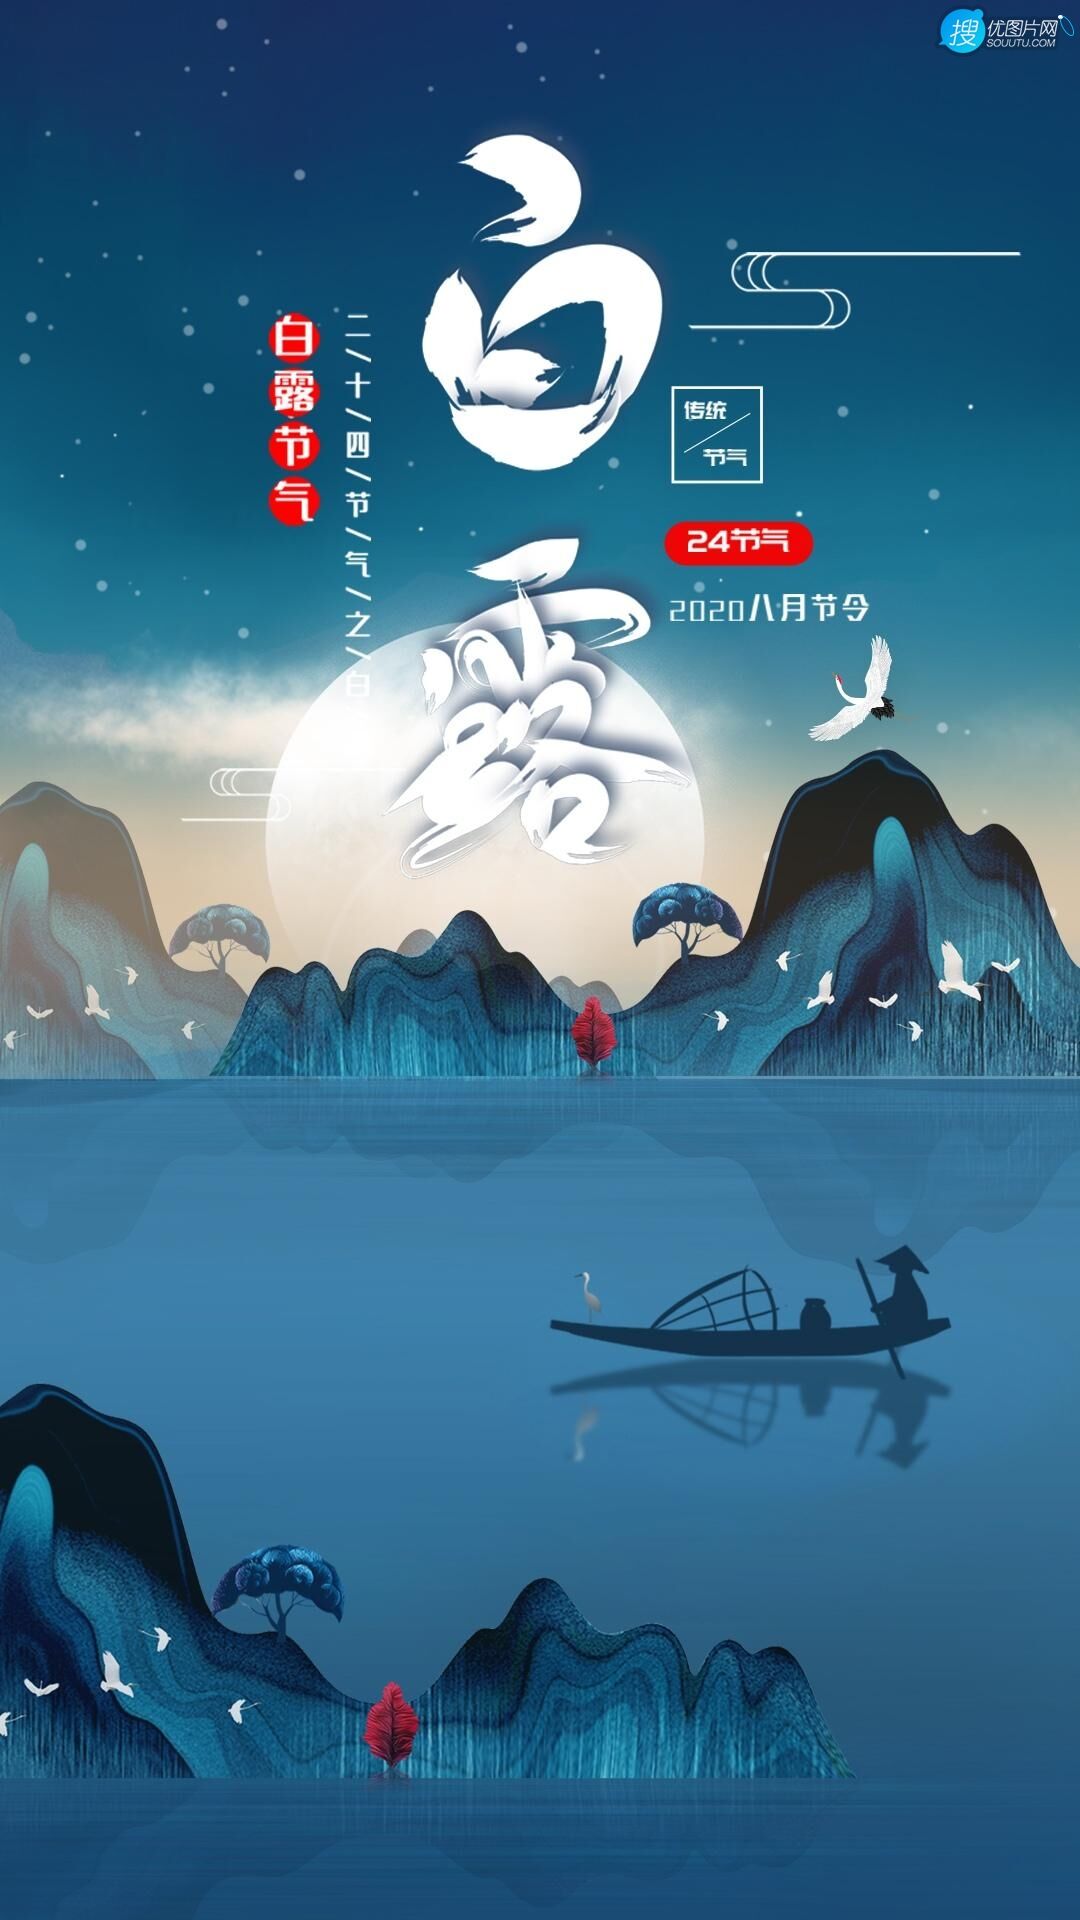 蝶舞花间，渔舟山水，白鹤祥瑞，唯美中国风，中国画主题白露节气手机壁纸套图2